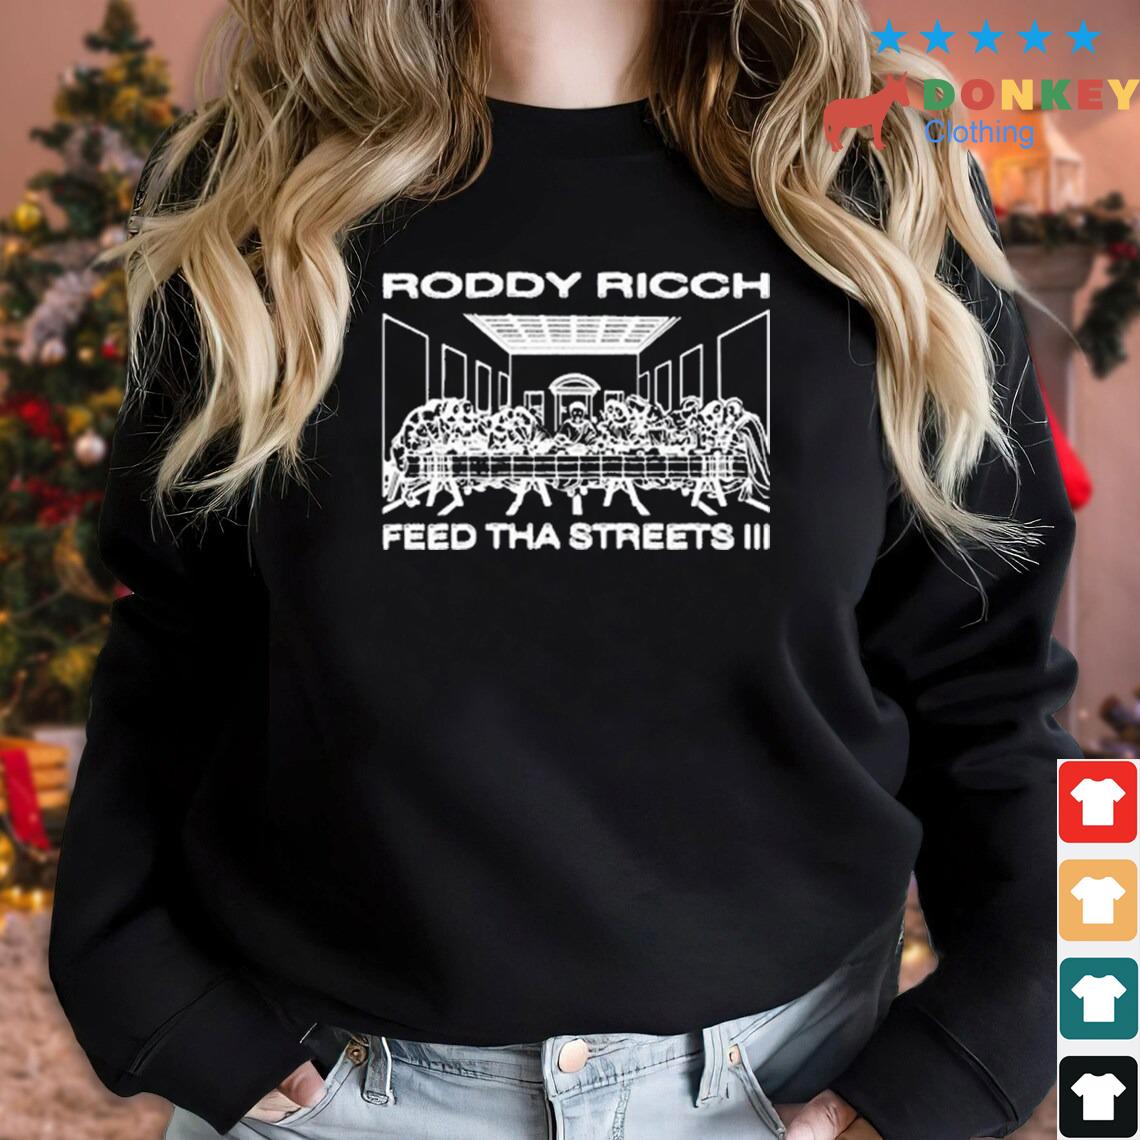 Last Supper Roddy Ricch Feed Tha Streets III Shirt